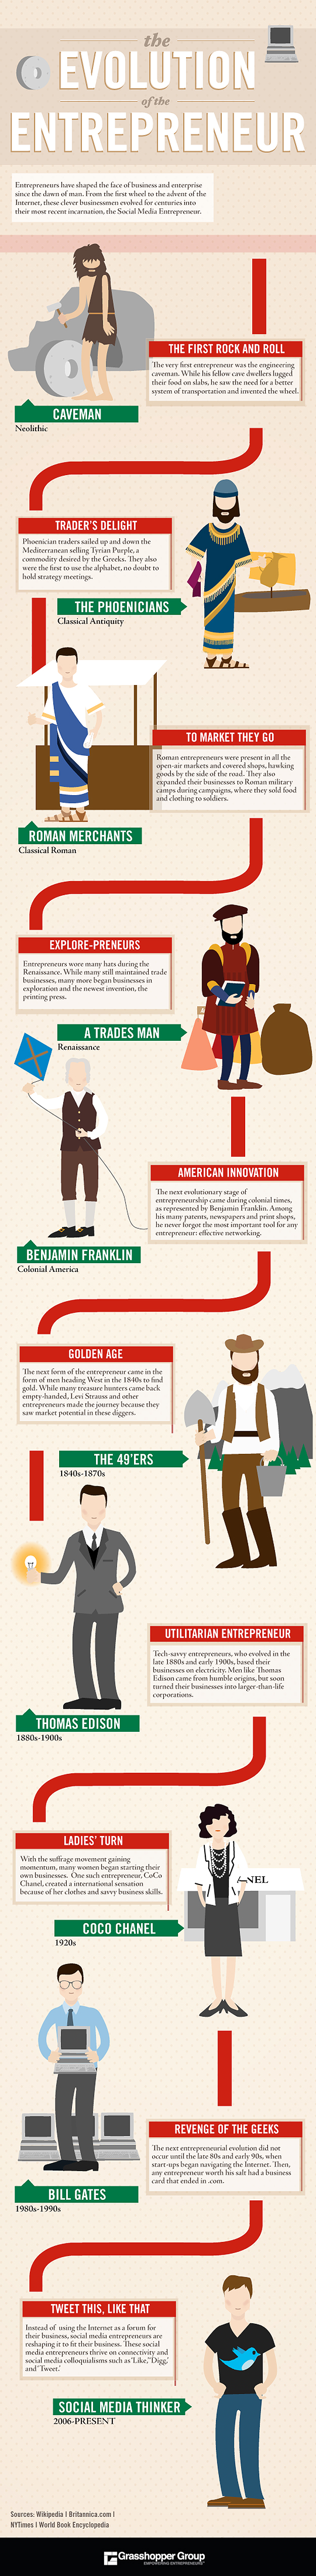 Evolution-of-the-Entrepreneur-Infographic